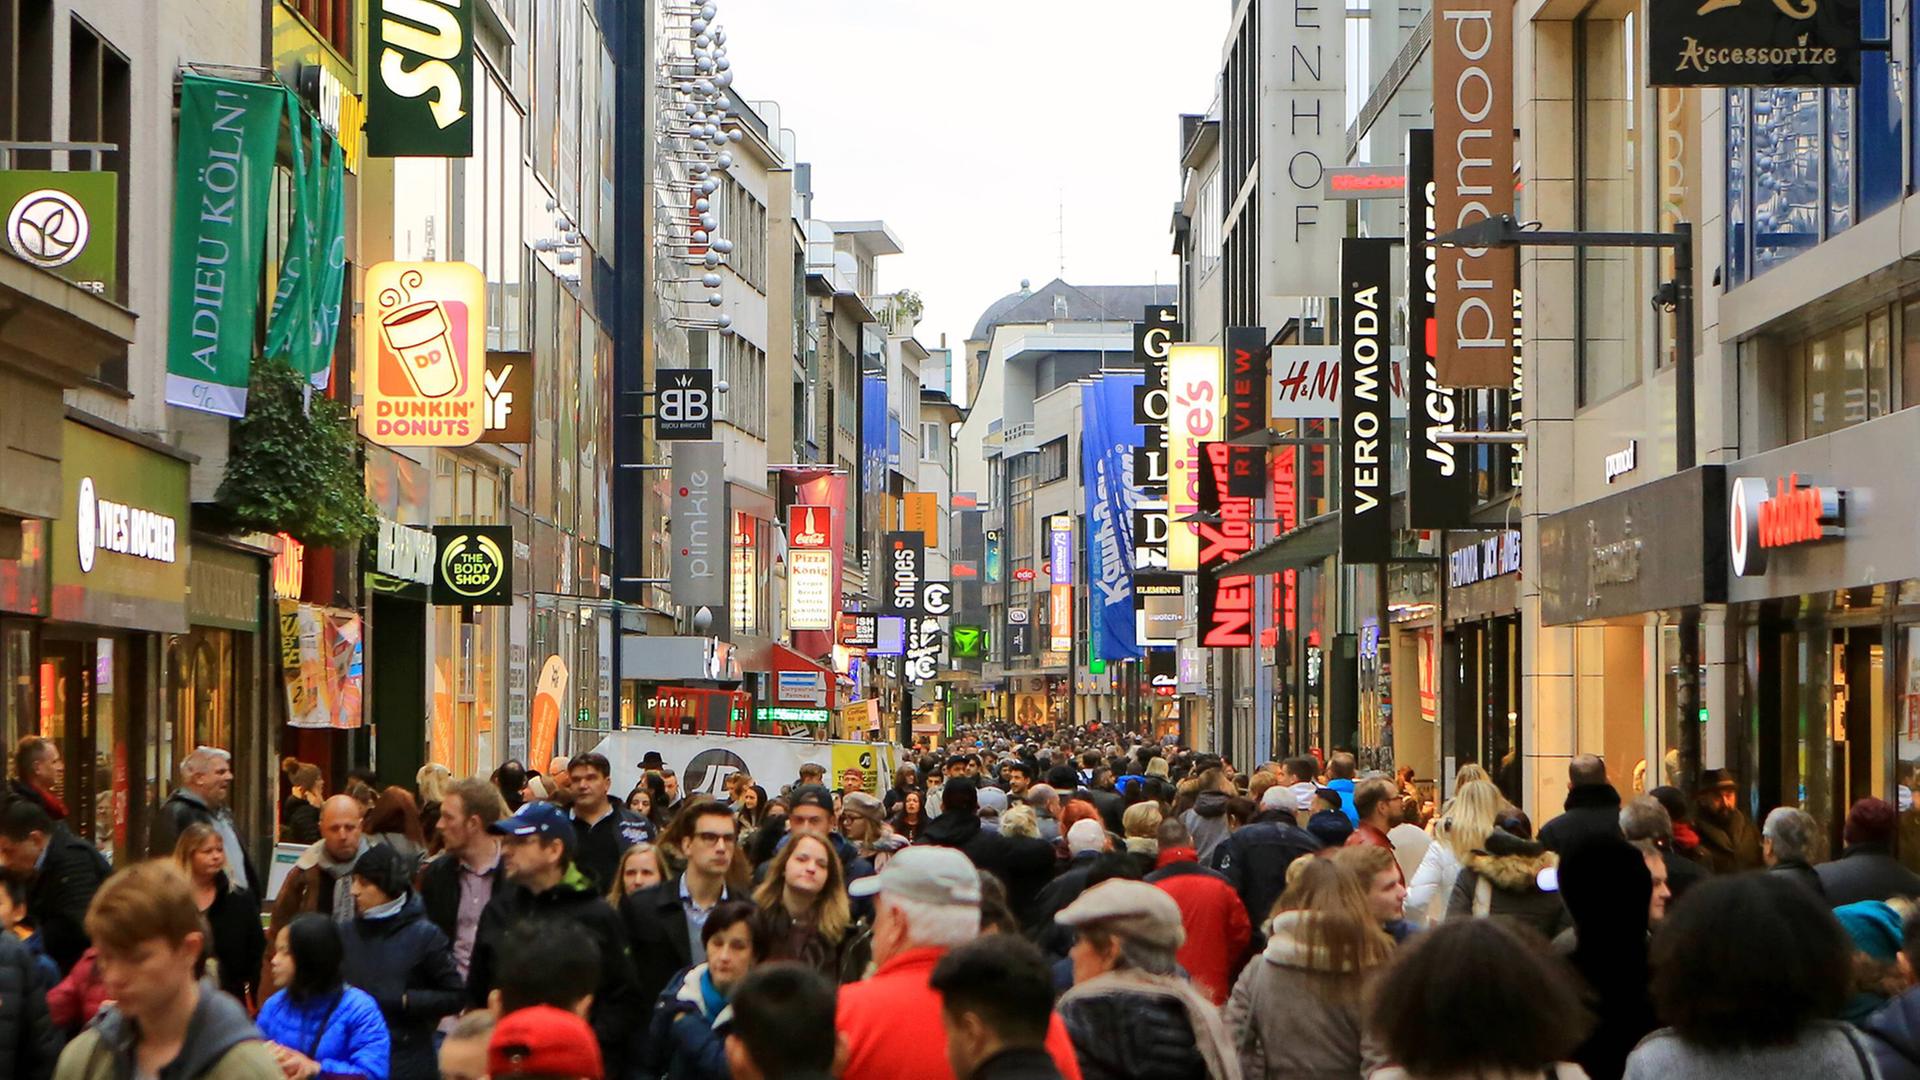 Viele Menschen sind an einem verkaufsoffenen Sonntag zum Bummeln und Shoppen in die Kölner Innenstadt gekommen, wie hier in die Hohe Straße.